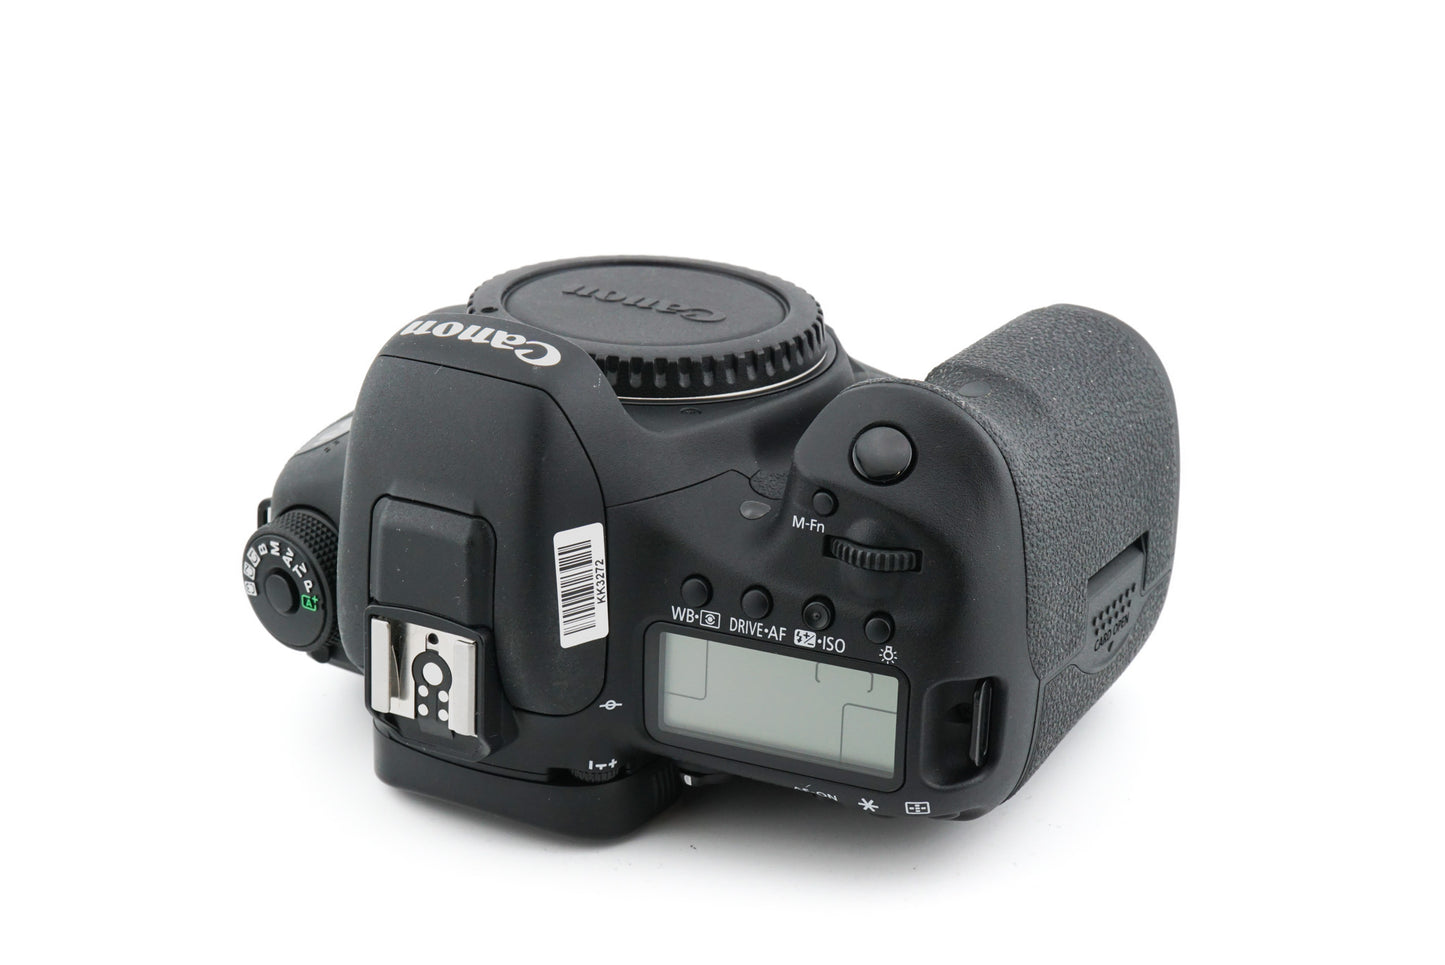 Canon EOS 7D Mark II + BG-E16 Battery Grip